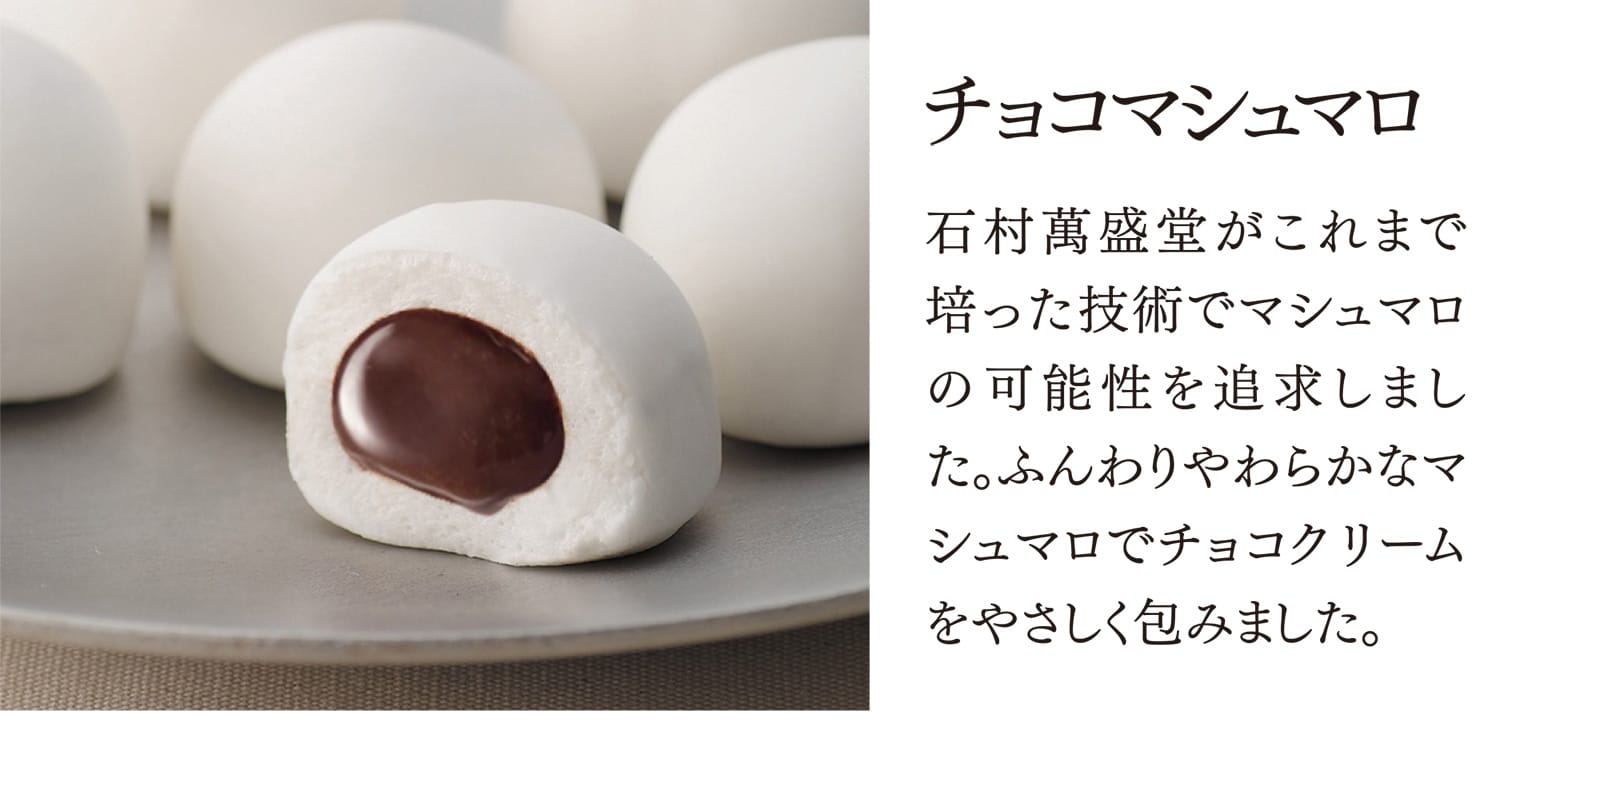 【チョコマシュマロ】石村萬盛堂がこれまで培った技術でマシュマロの可能性を追求しました。ふんわりやわらかなマシュマロでチョコクリームをやさしく包みました。